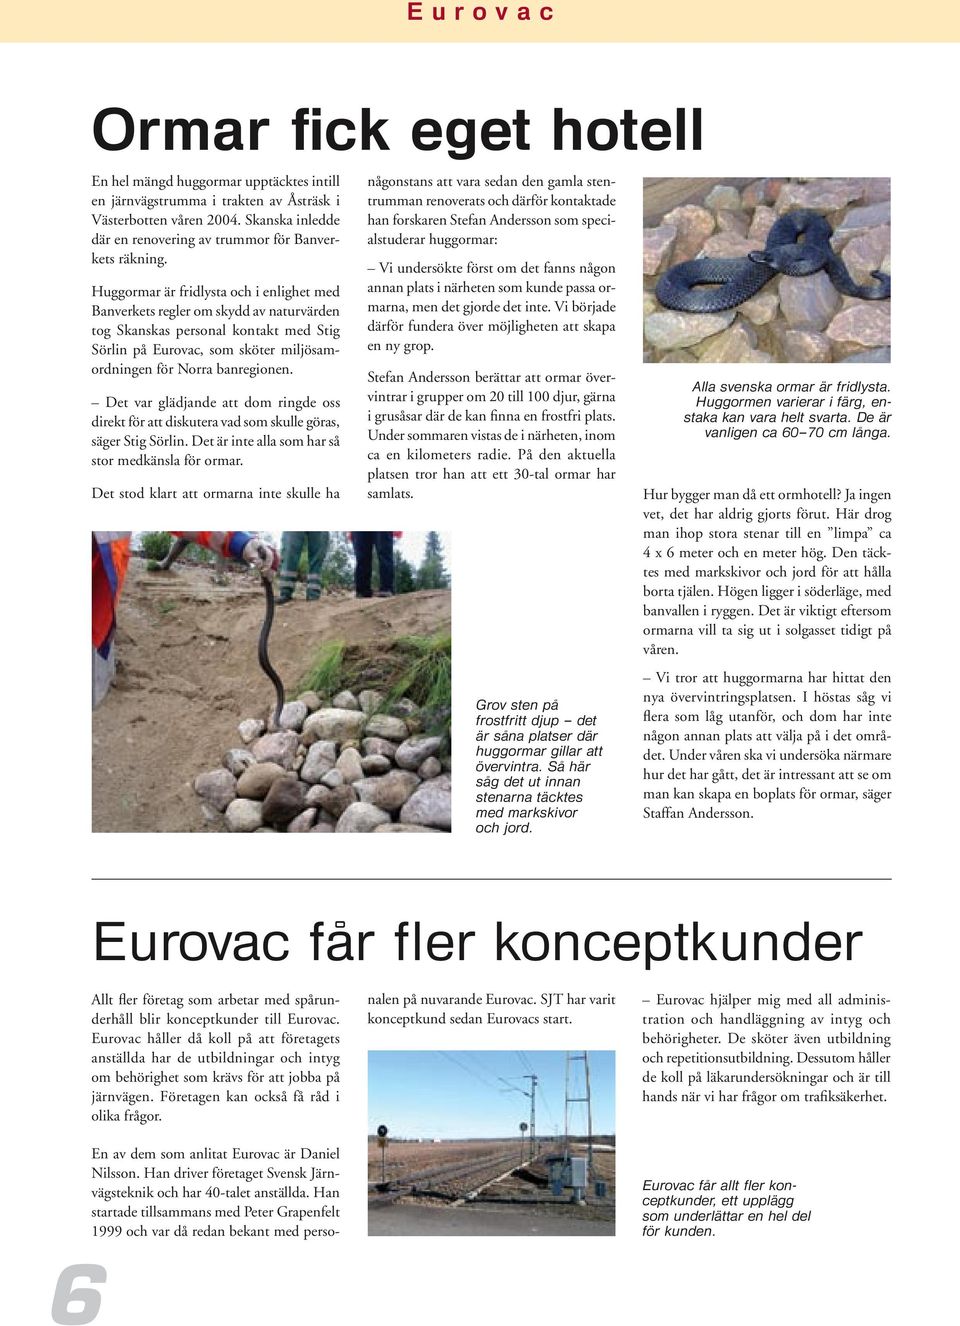 Huggormar är fridlysta och i enlighet med Banverkets regler om skydd av naturvärden tog Skanskas personal kontakt med Stig Sörlin på Eurovac, som sköter miljösamordningen för Norra banregionen.